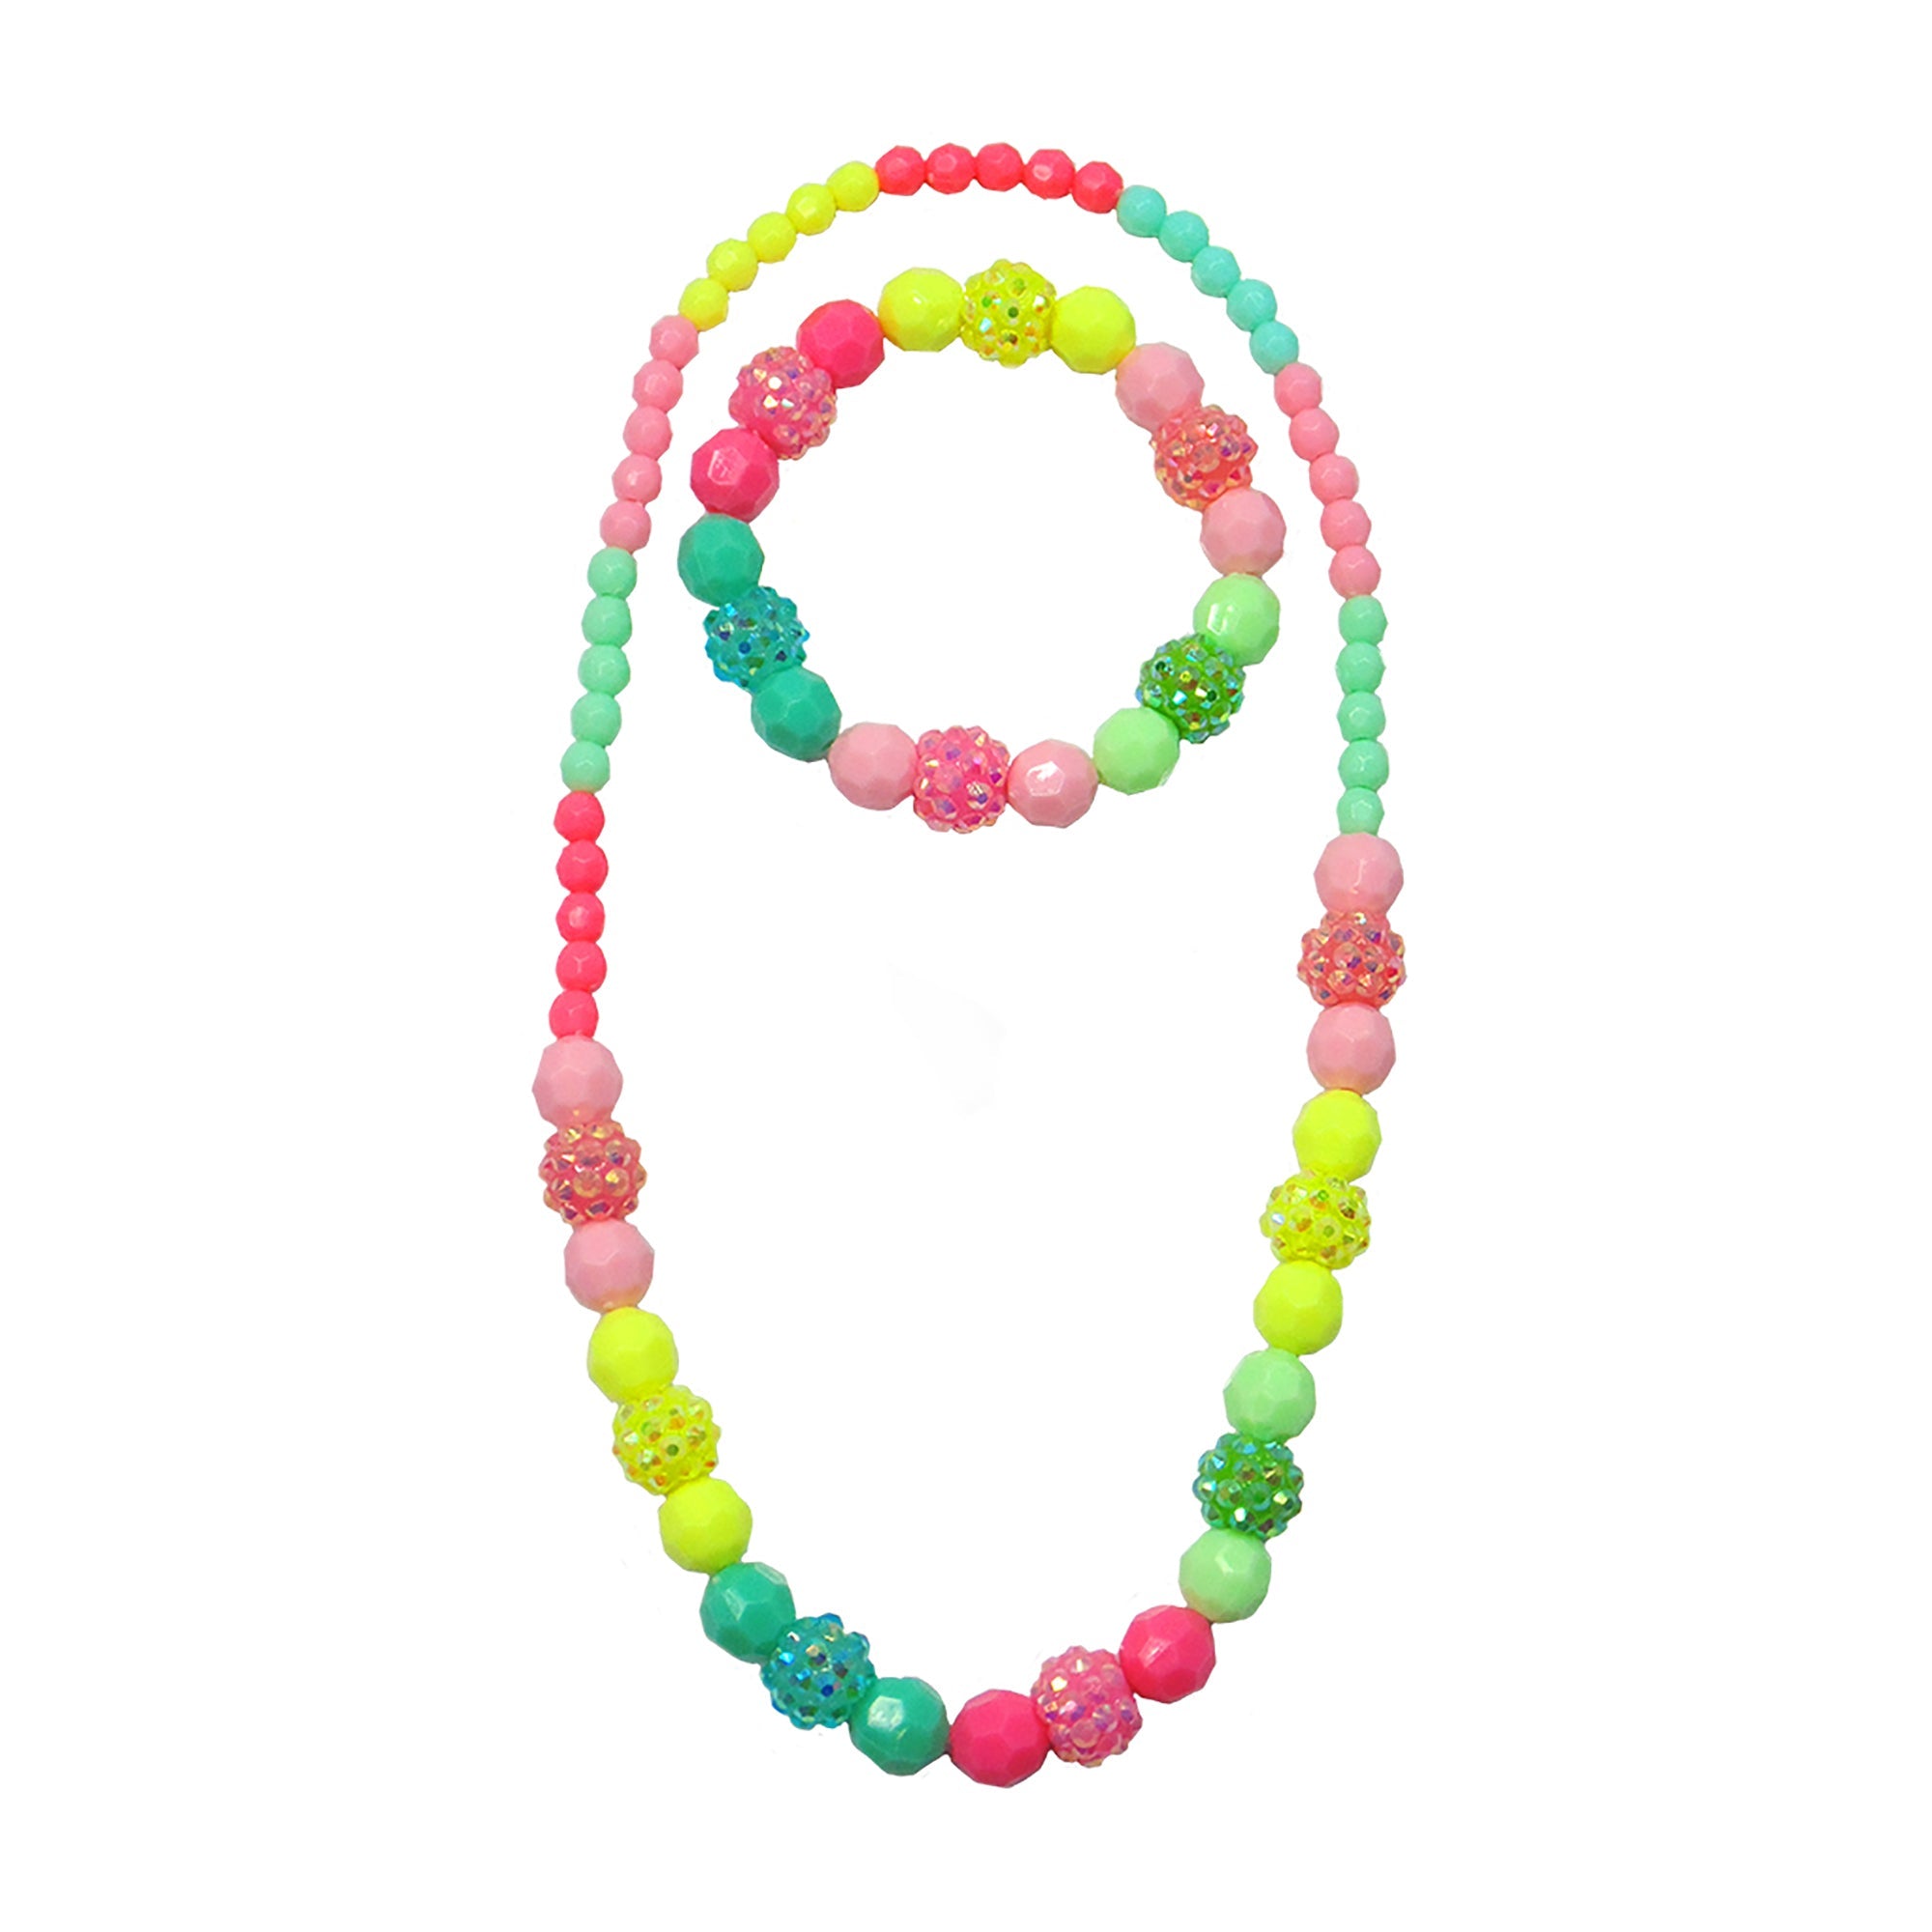 Kid's Jewelry Vividly Vibrant Necklace and Bracelet Set